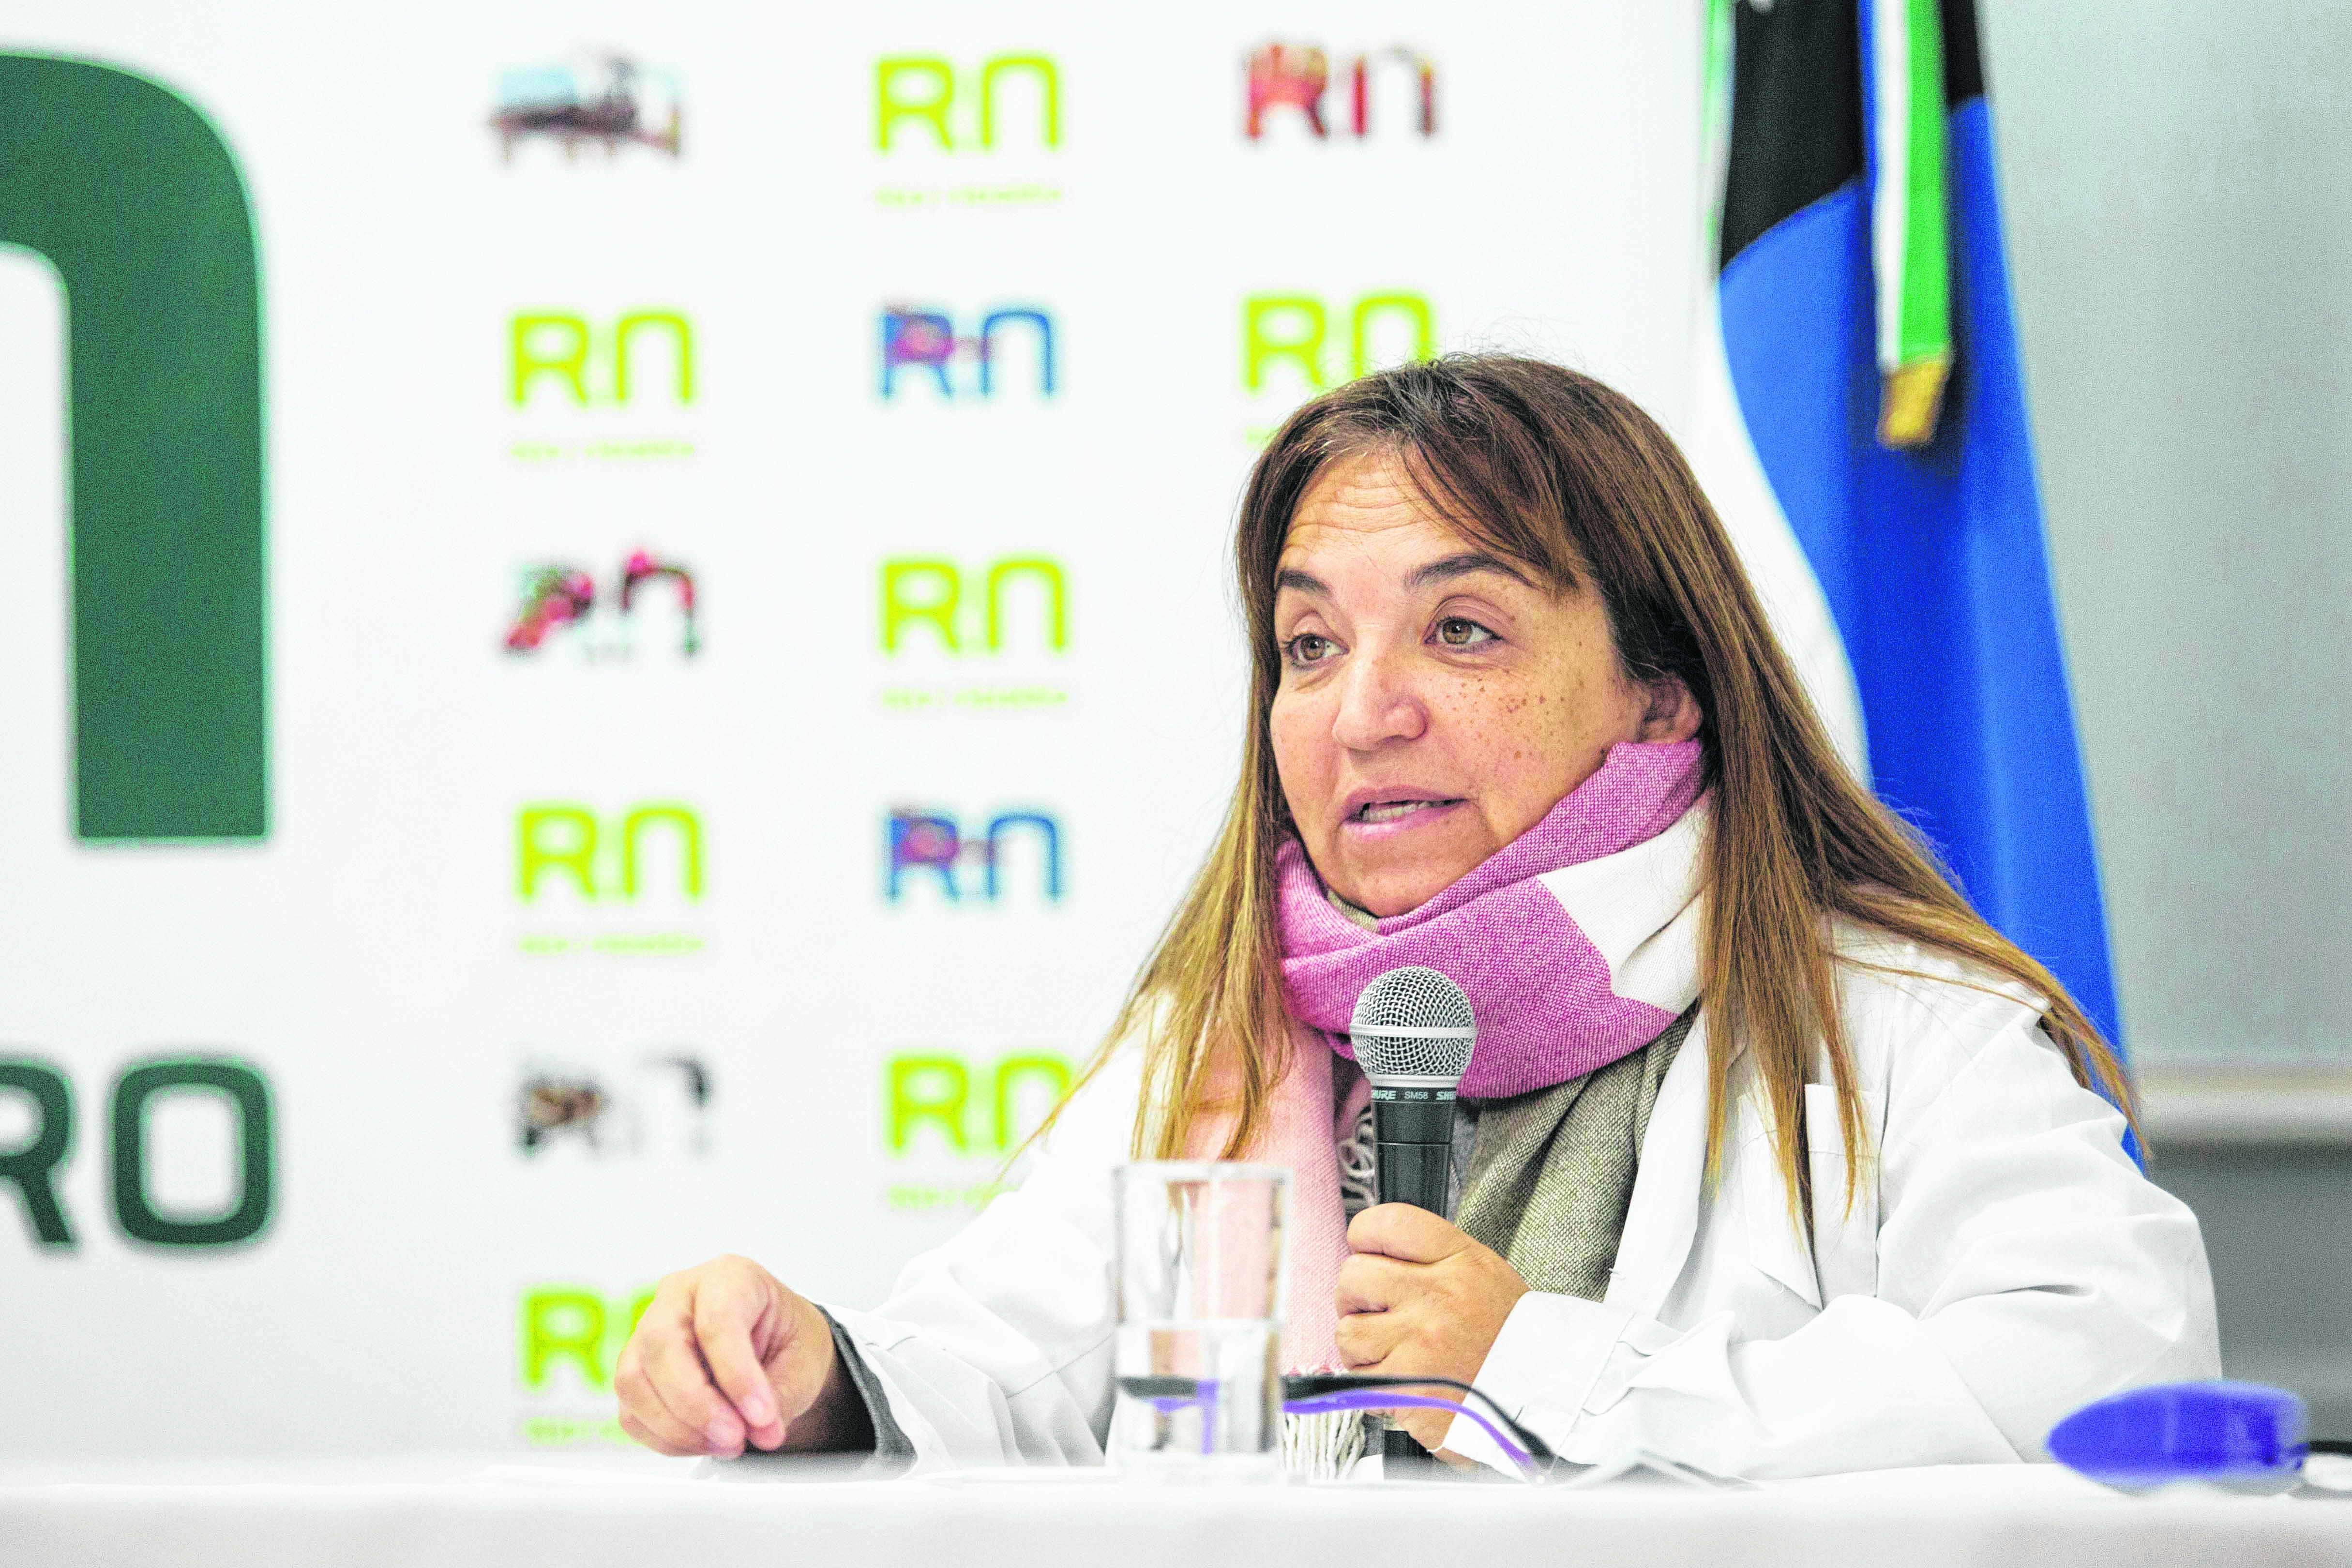 La doctora Mercedes Iberó, secretaria de Relaciones Institucionales del Ministerio de Salud rionegrino, informa el parte diario. (Foto: Prensa Gobierno de Río Negro)